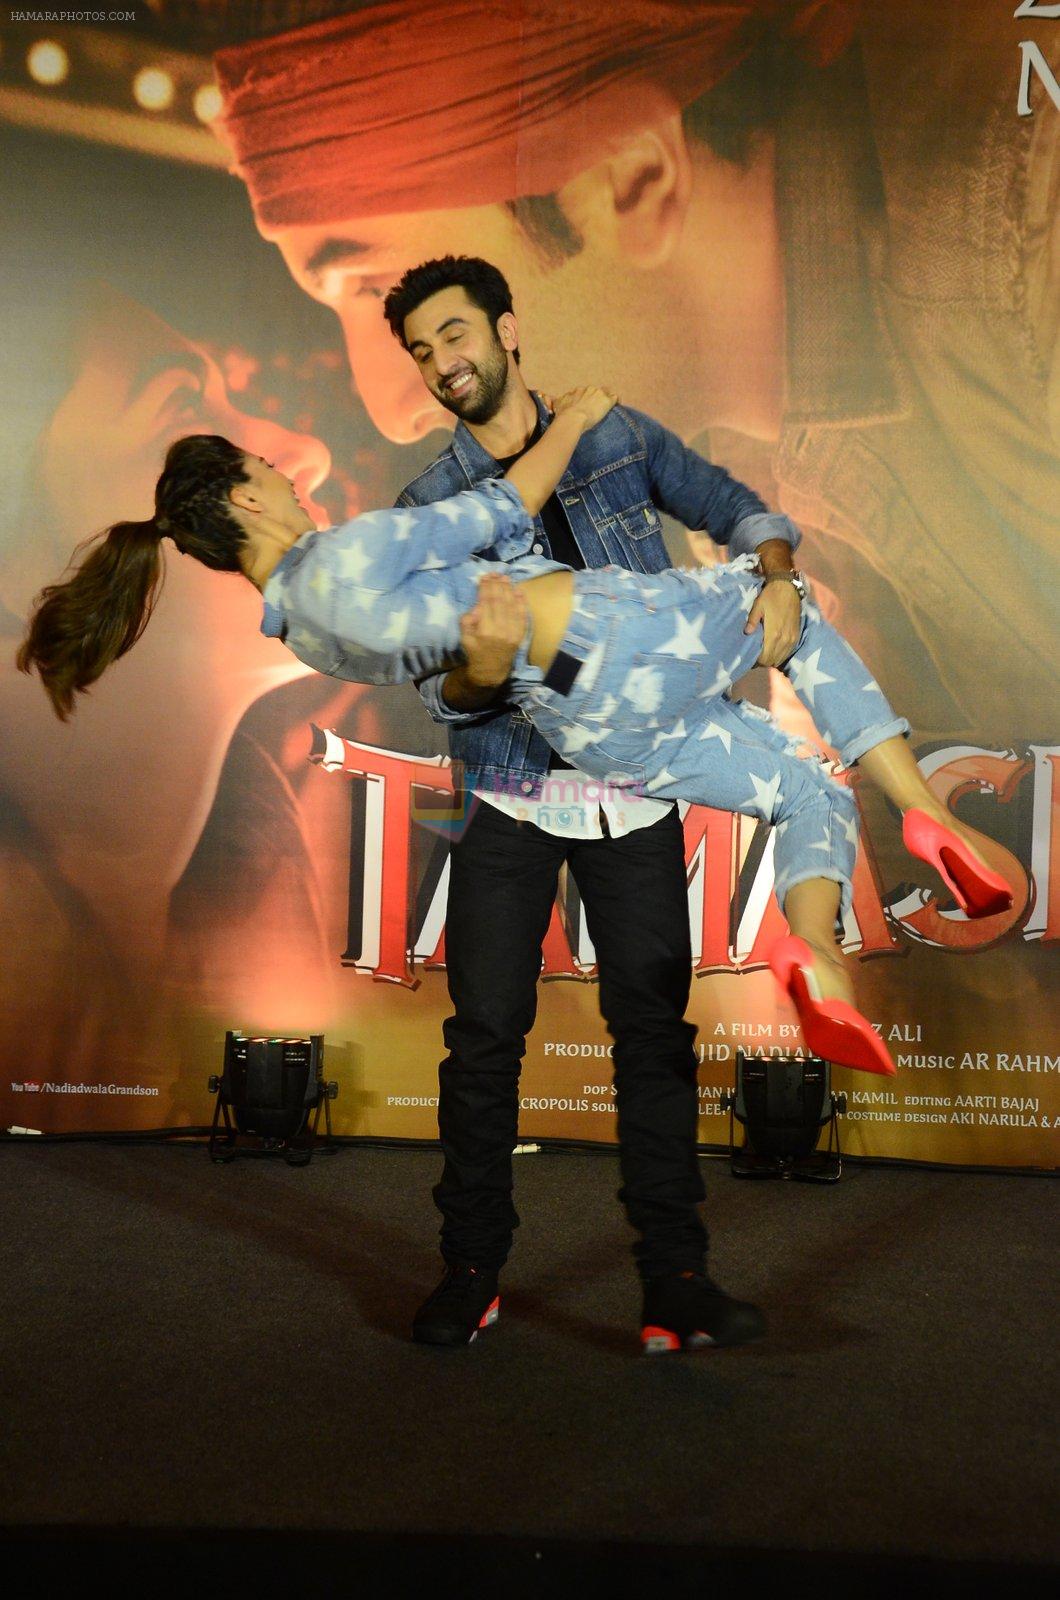 Deepika Padukone, Ranbir Kapoor at Tamasha promotions in Mumbai on 18th Nov 2015